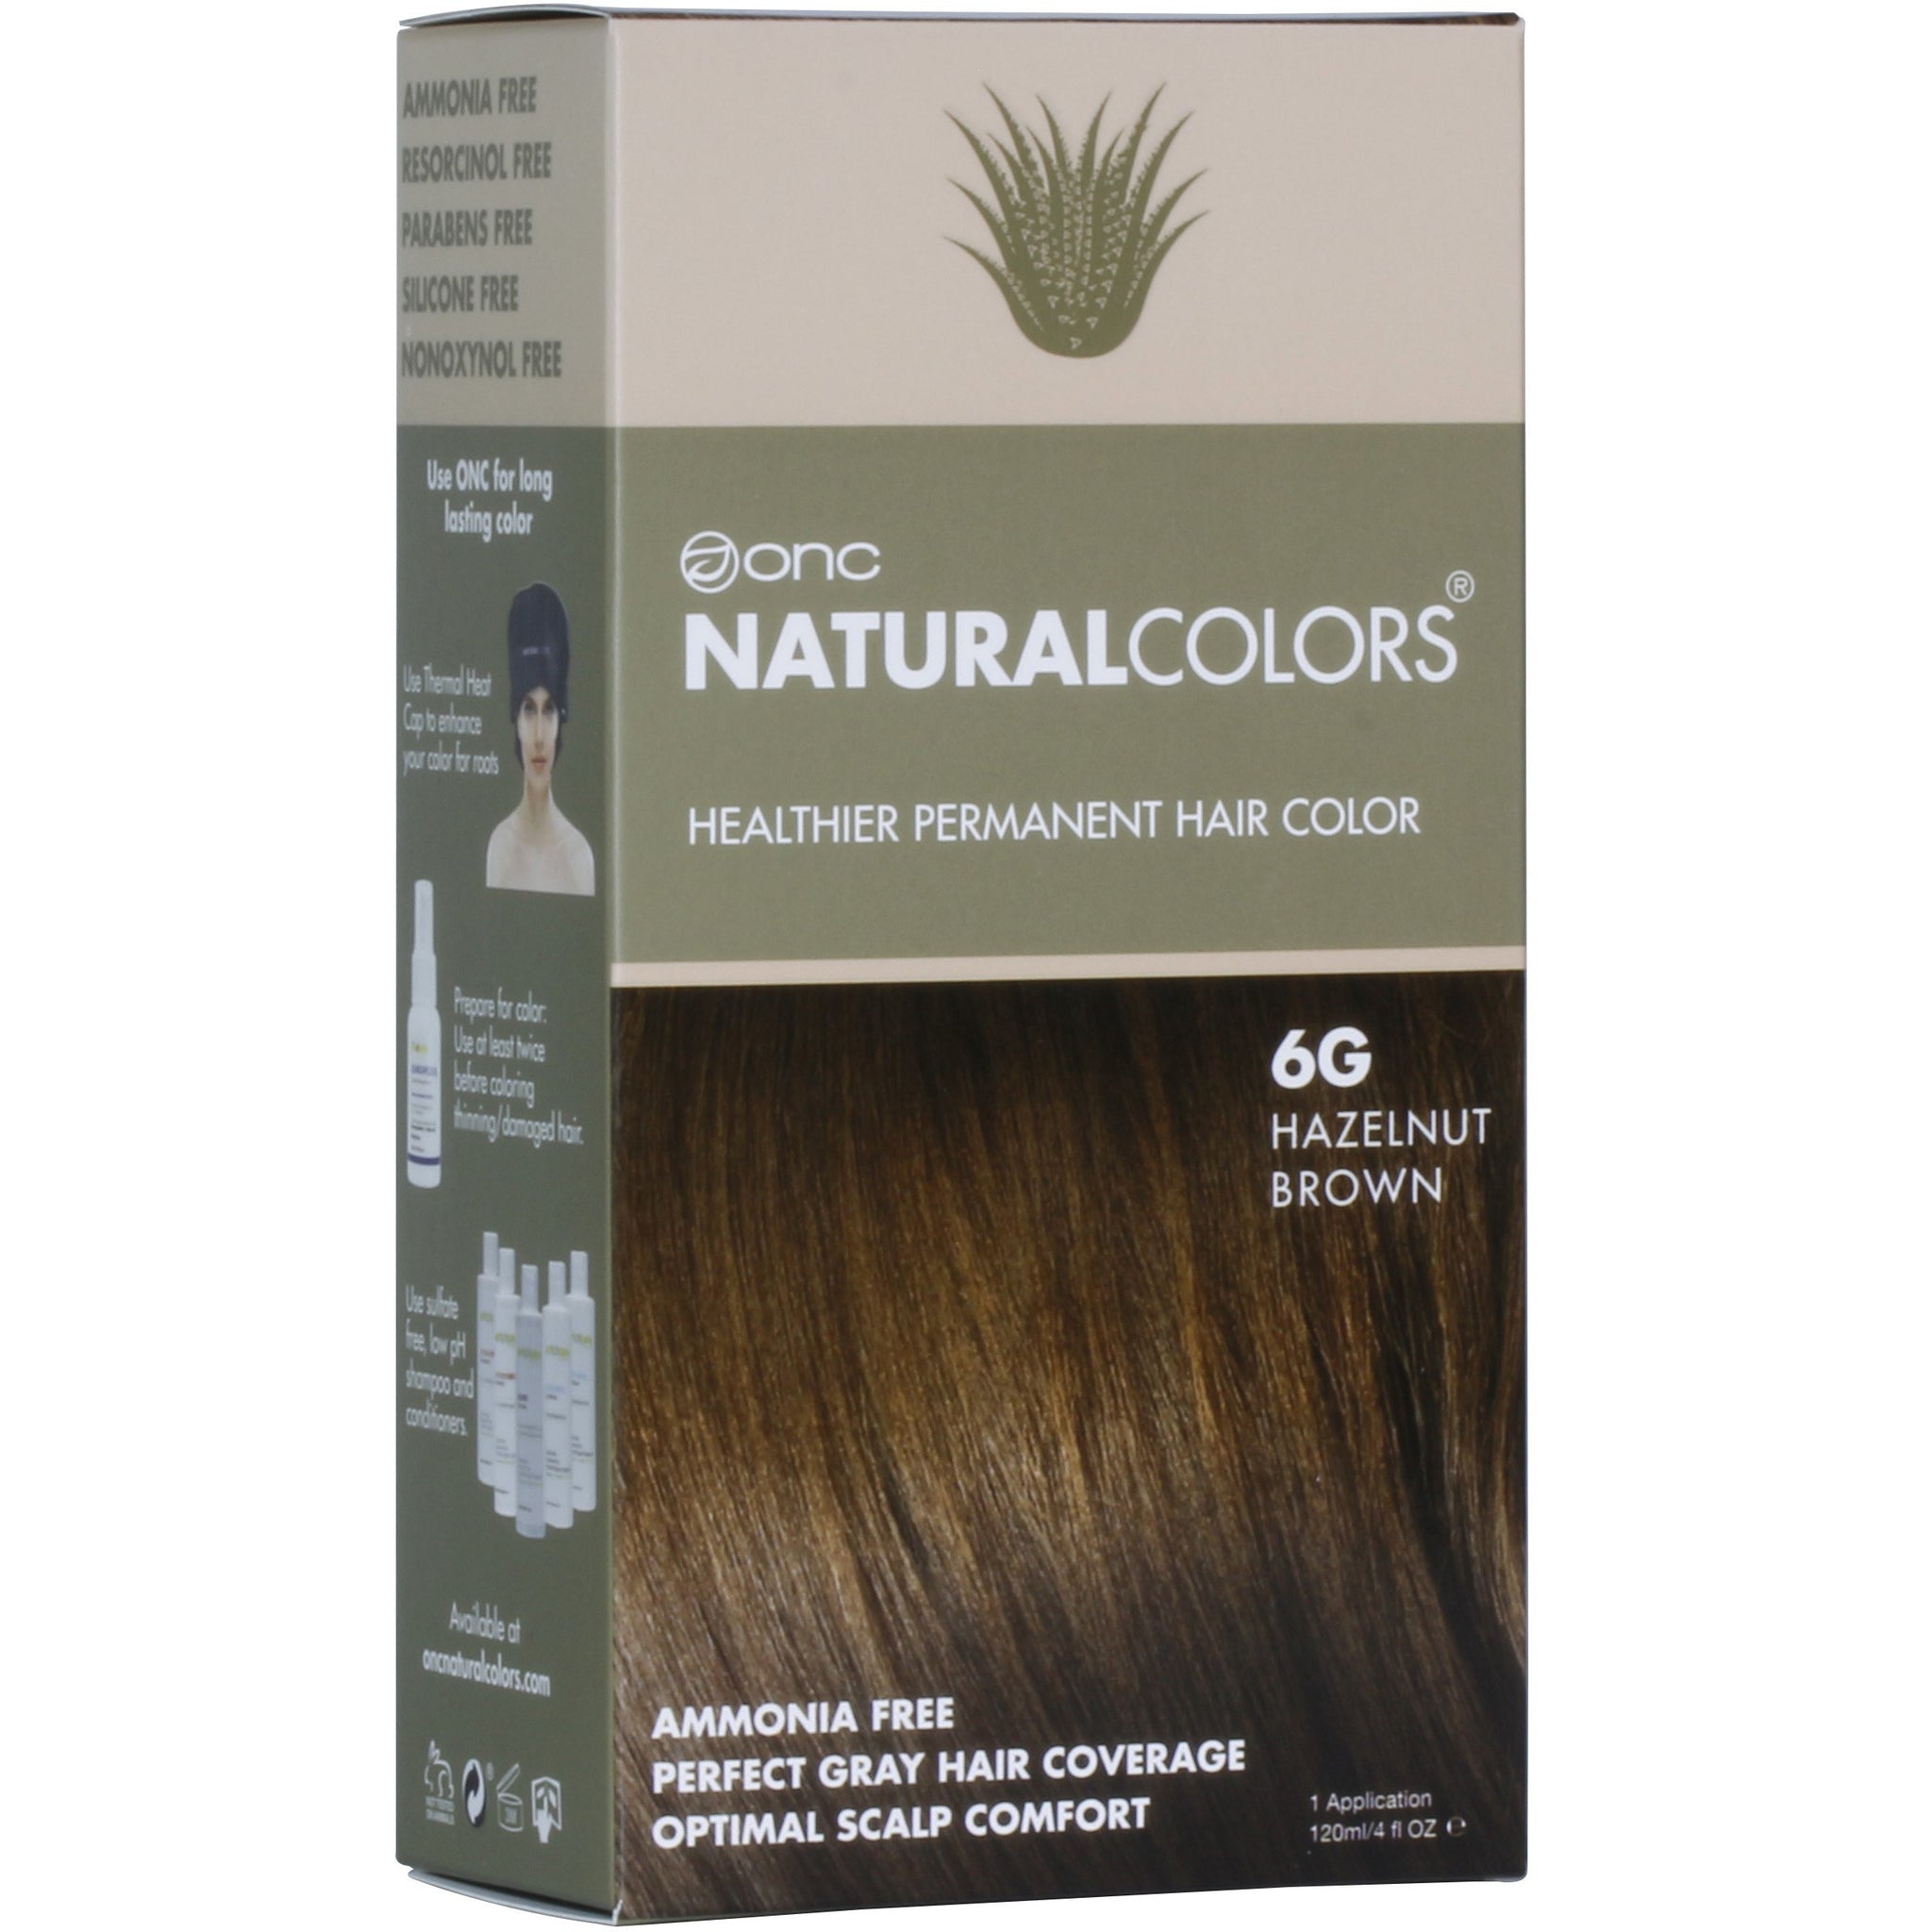 ONC NATURALCOLORS Healthier Permanent Hair Color – Hazelnut Brown